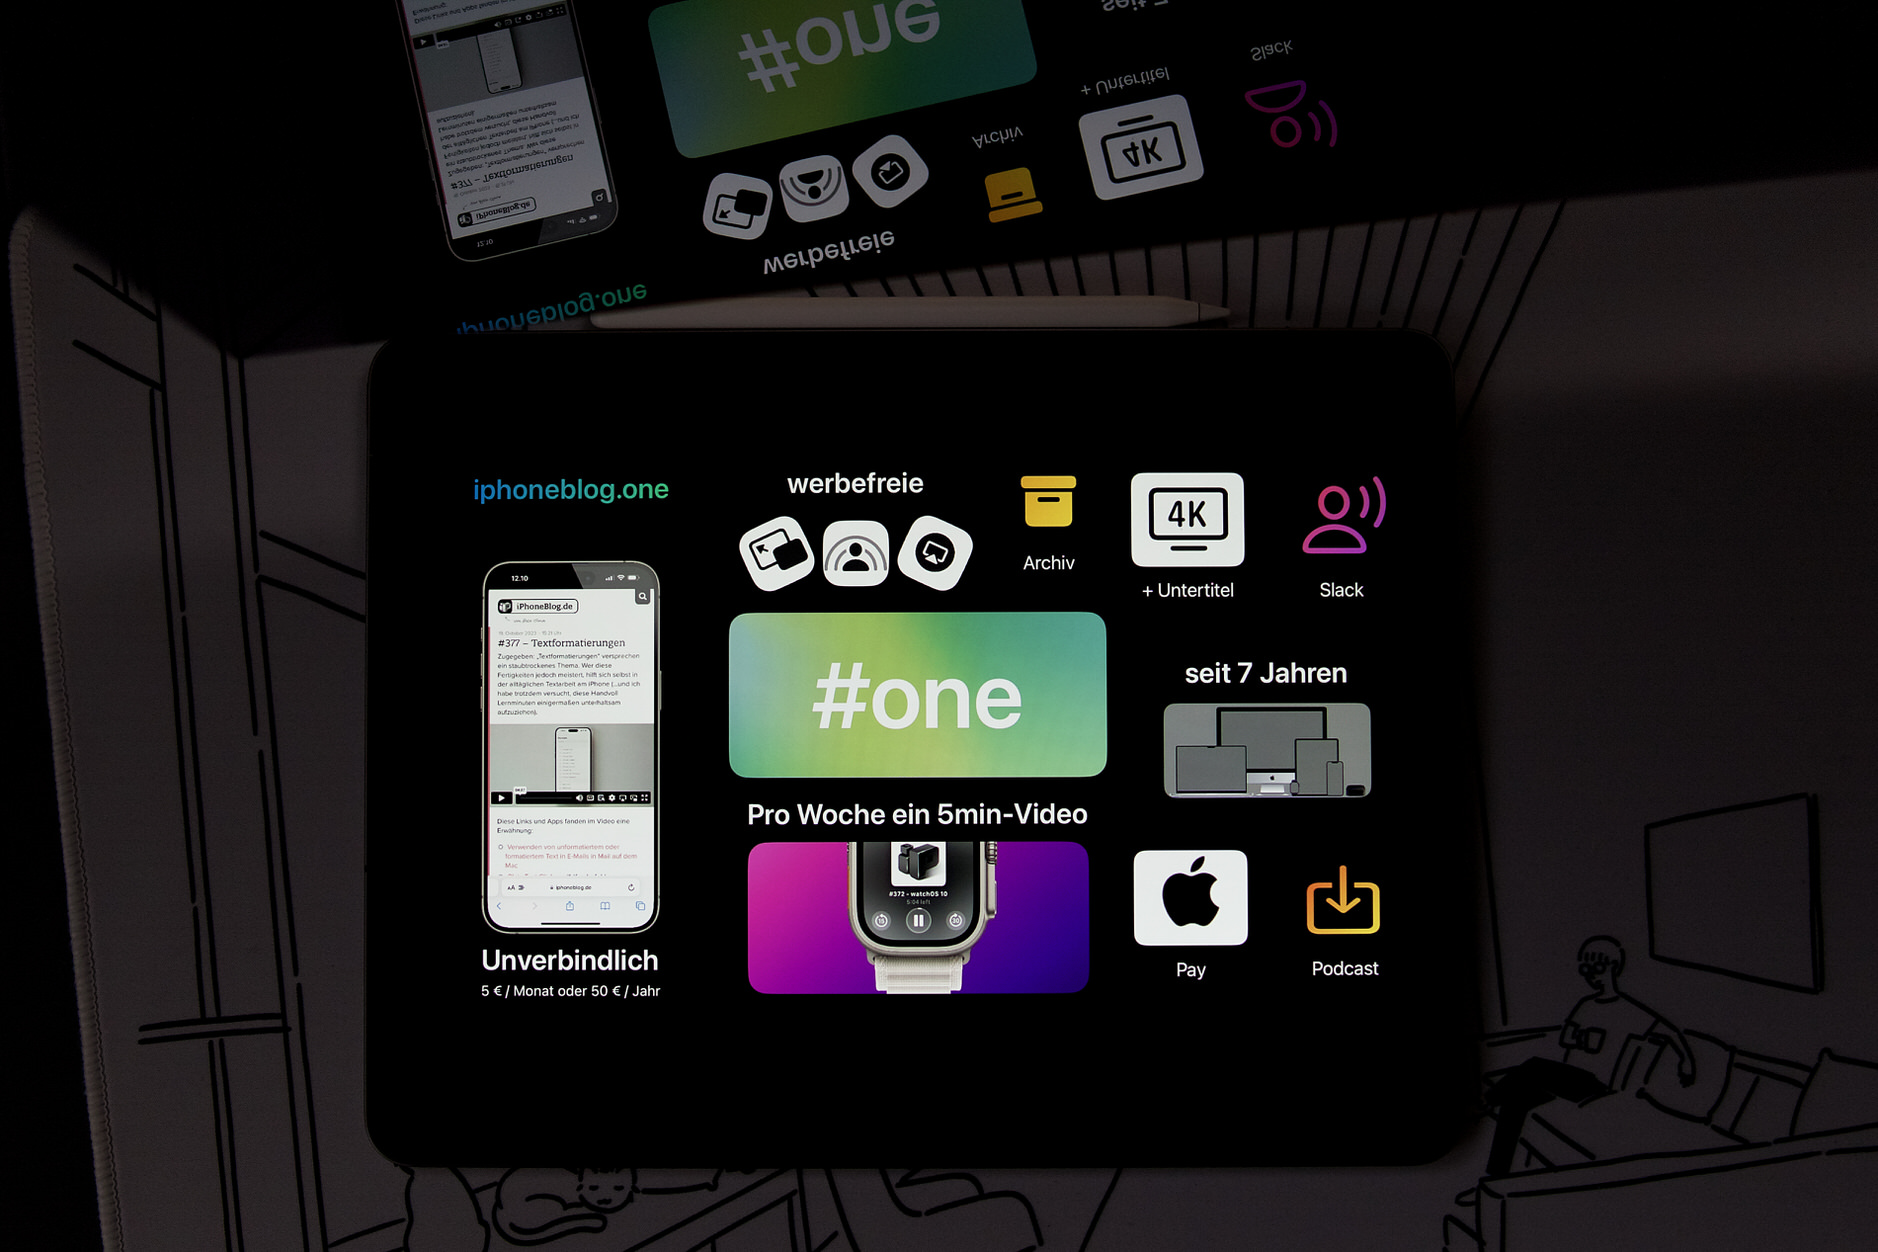 Bild zeigt iPad mit Bento-Craft-App, die die Vorteile von iPhoneBlog #one aufführt.